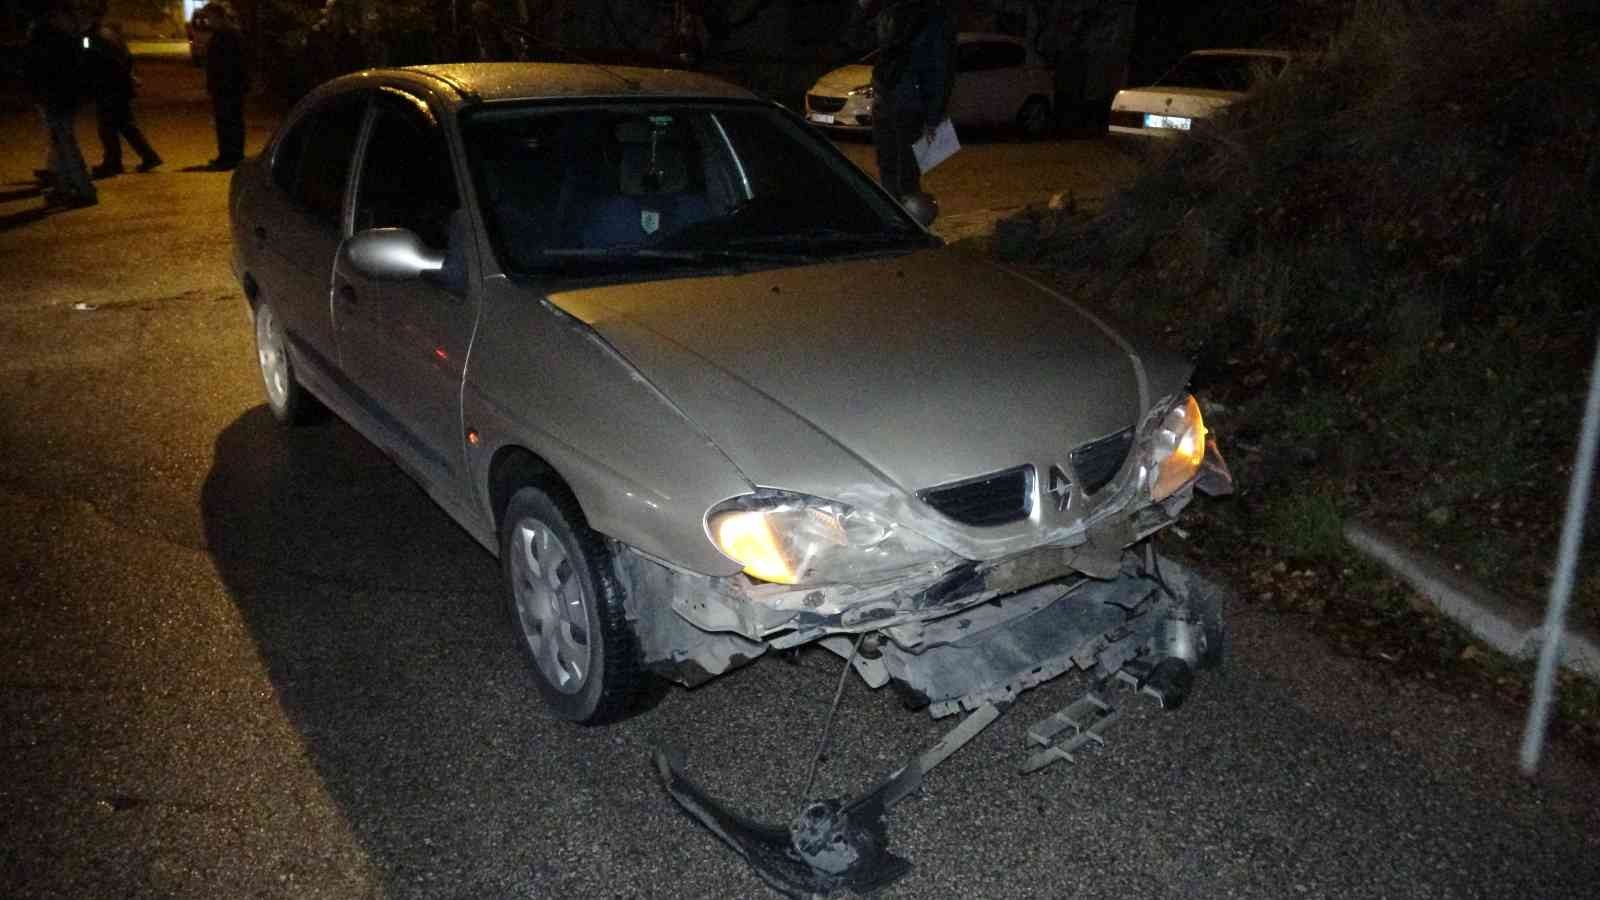 Isparta’da trafik kazası: 3 yaralı #isparta